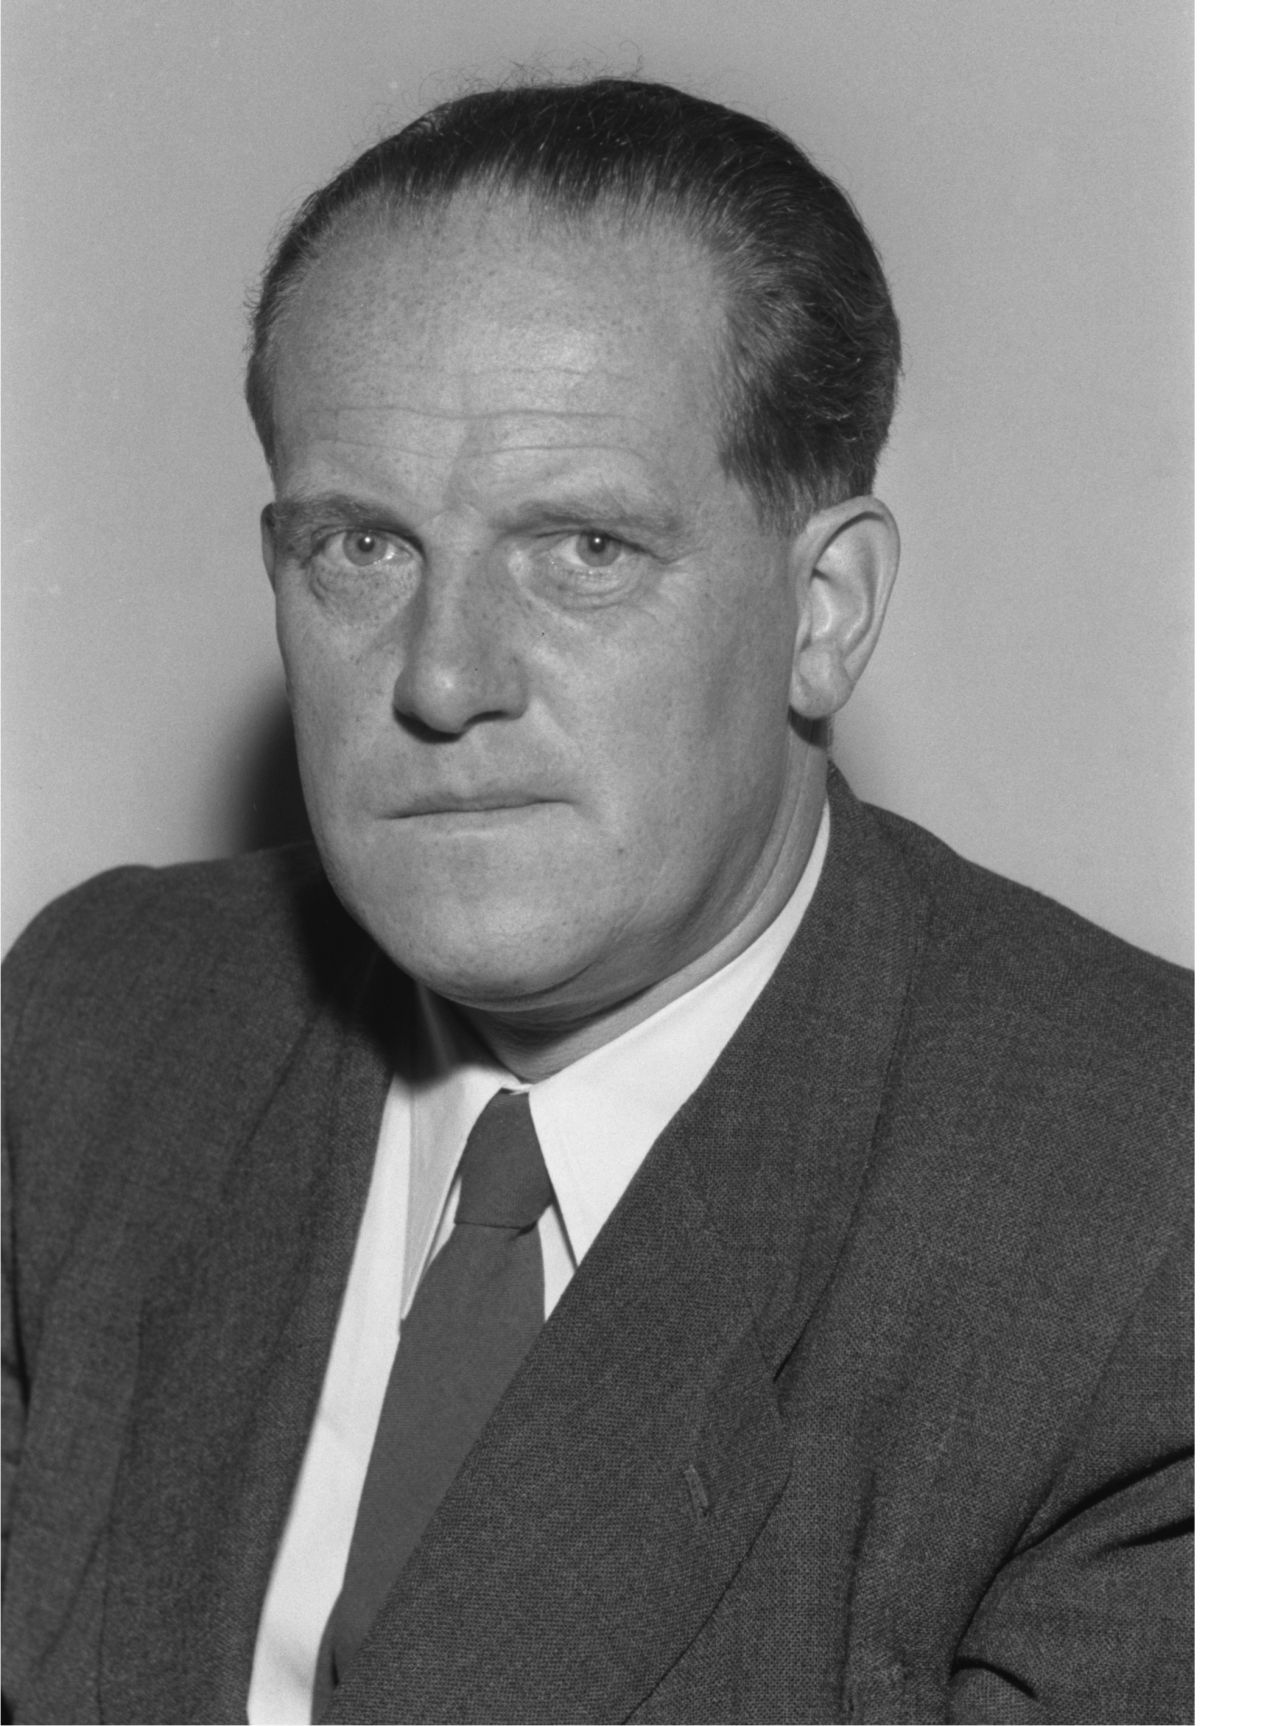 Porträtfoto des SPD-Politikers Herbert Wehner, Abgeordneter des Deutschen Bundestages, 1953.